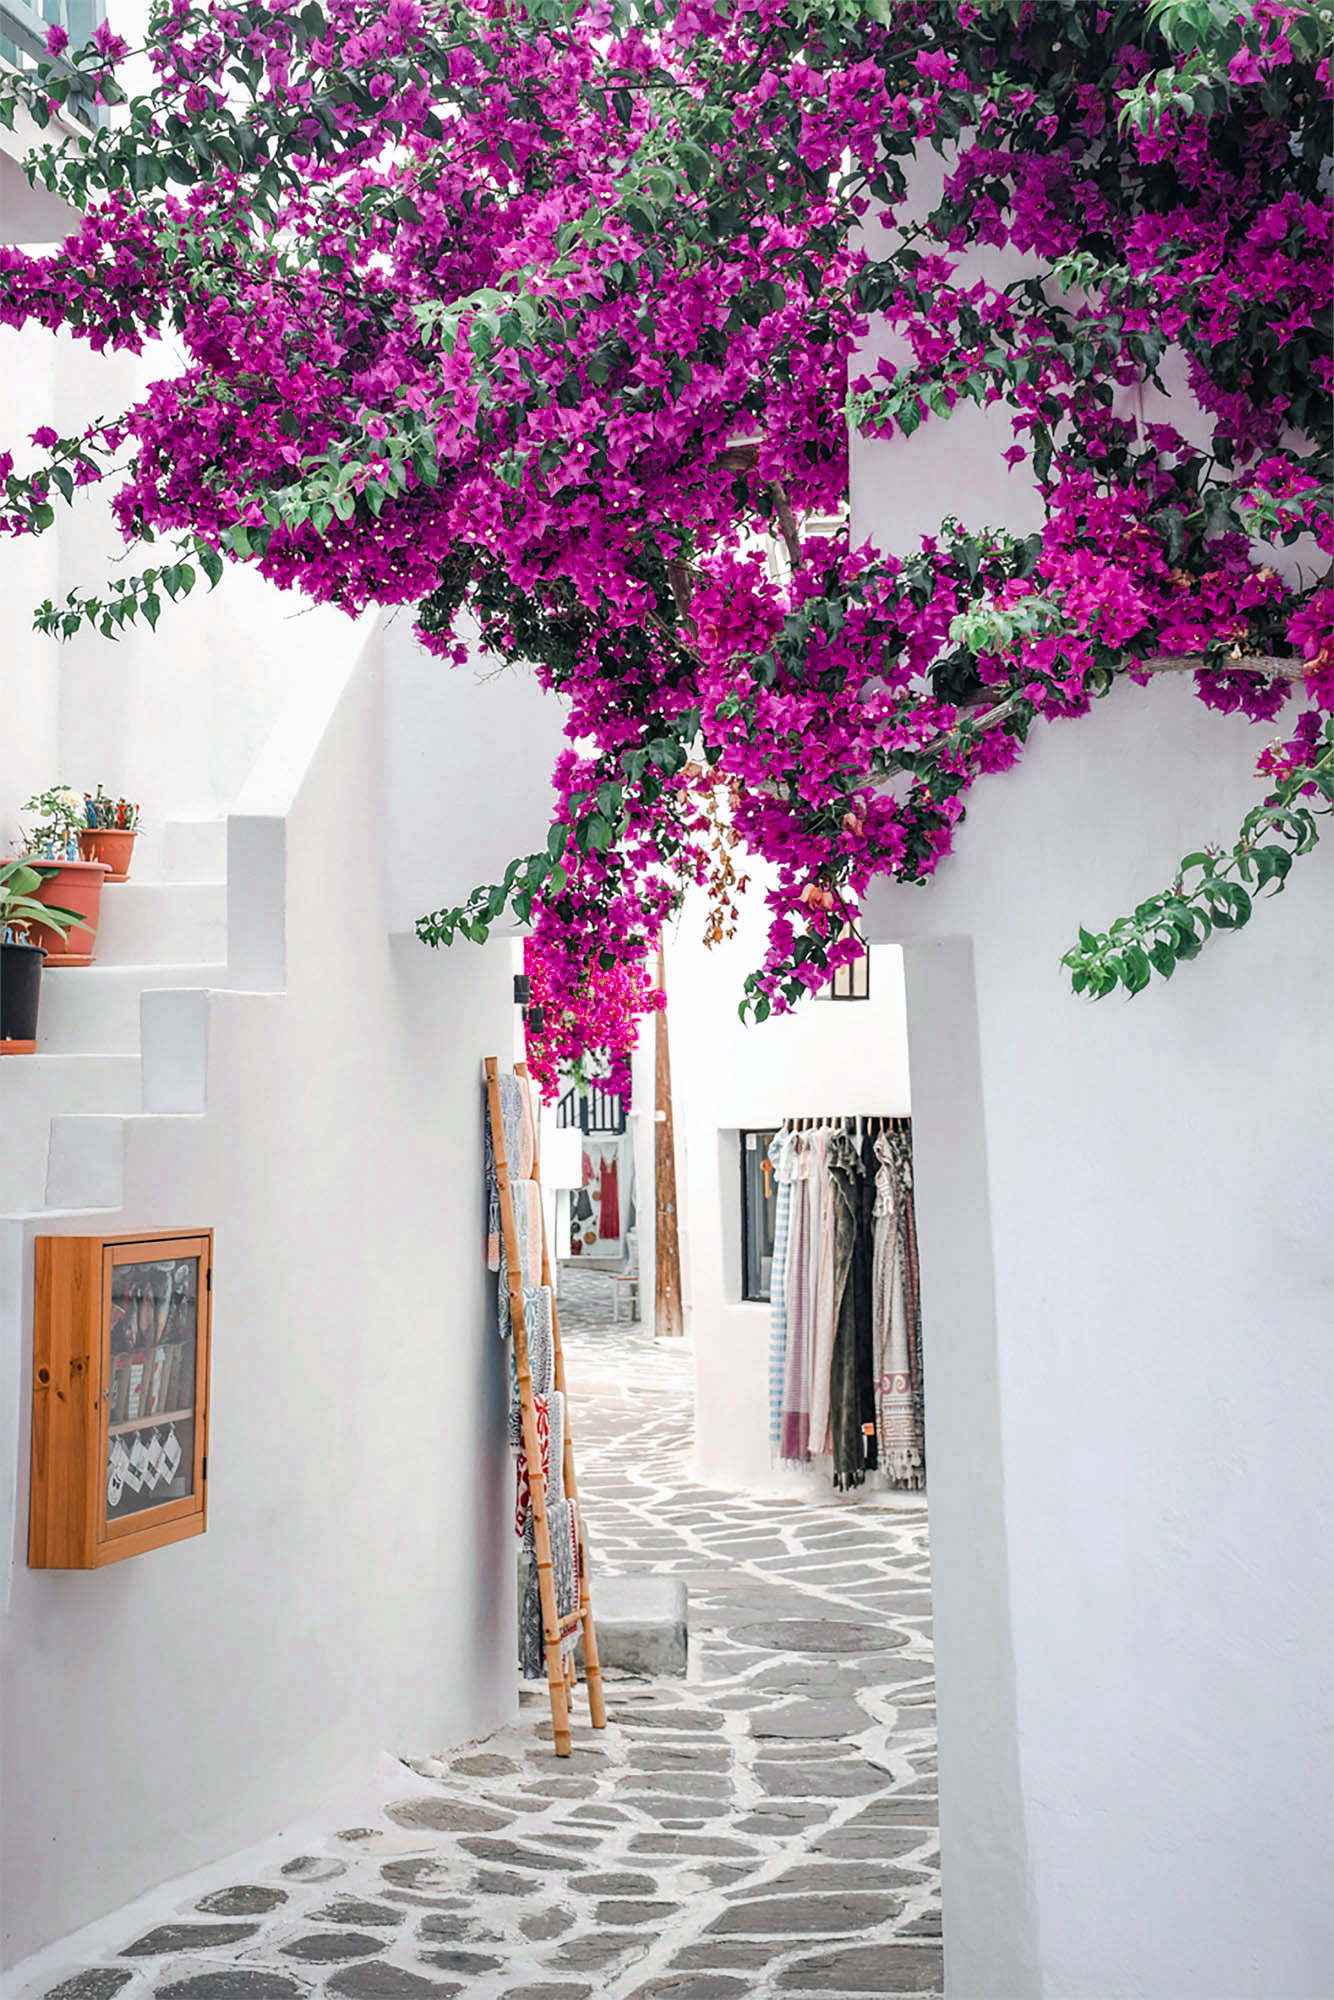 gdzieś w grecji, biała uliczka, różowe kwiaty, piękny detal